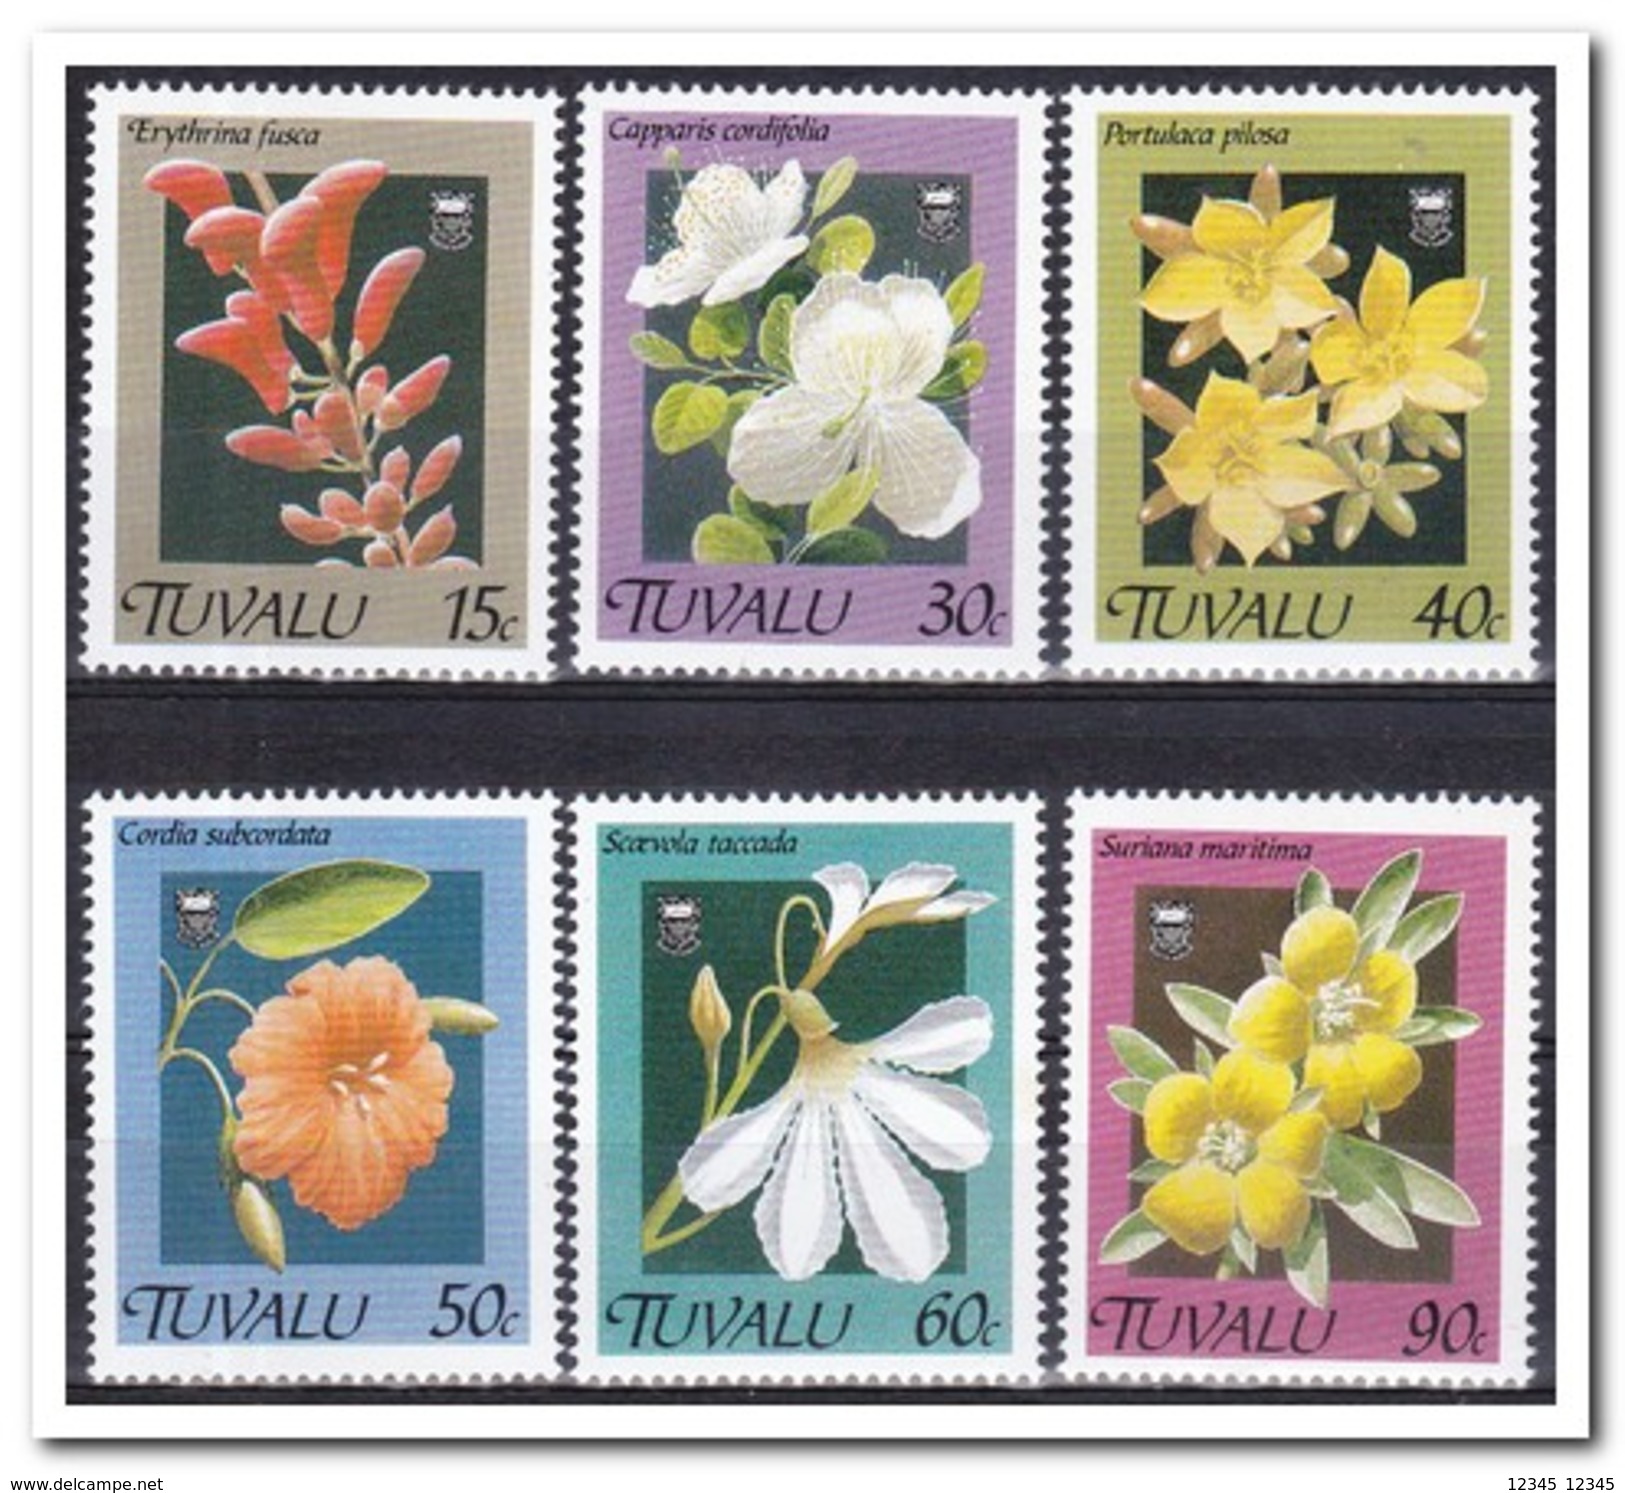 Tuvalu 1990, Postfris MNH, Flowers - Tuvalu